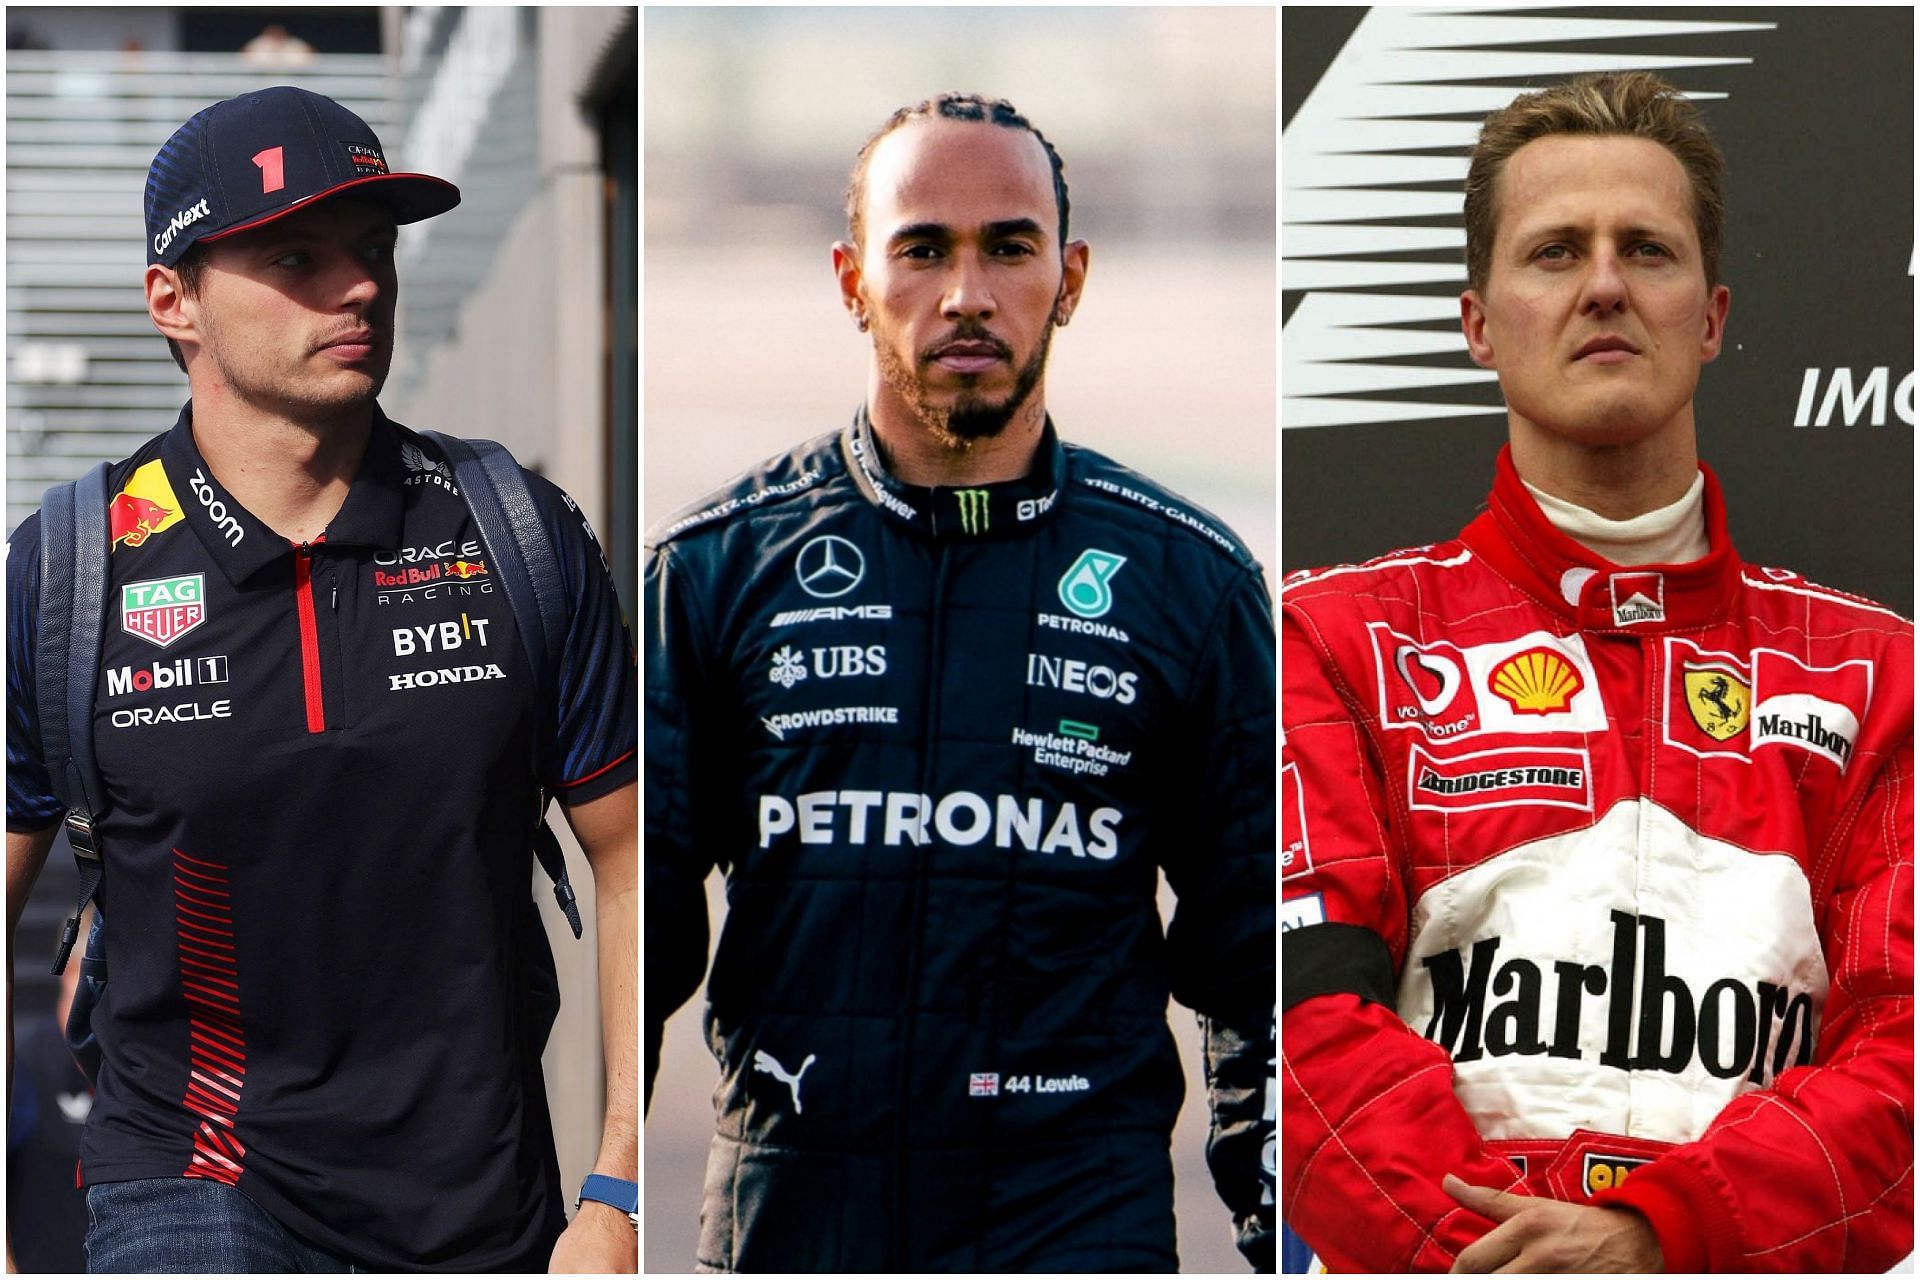 Max Verstappen (L), Lewis Hamilton (C), and Michael Schumacher (R) (Collage via Sportskeeda)